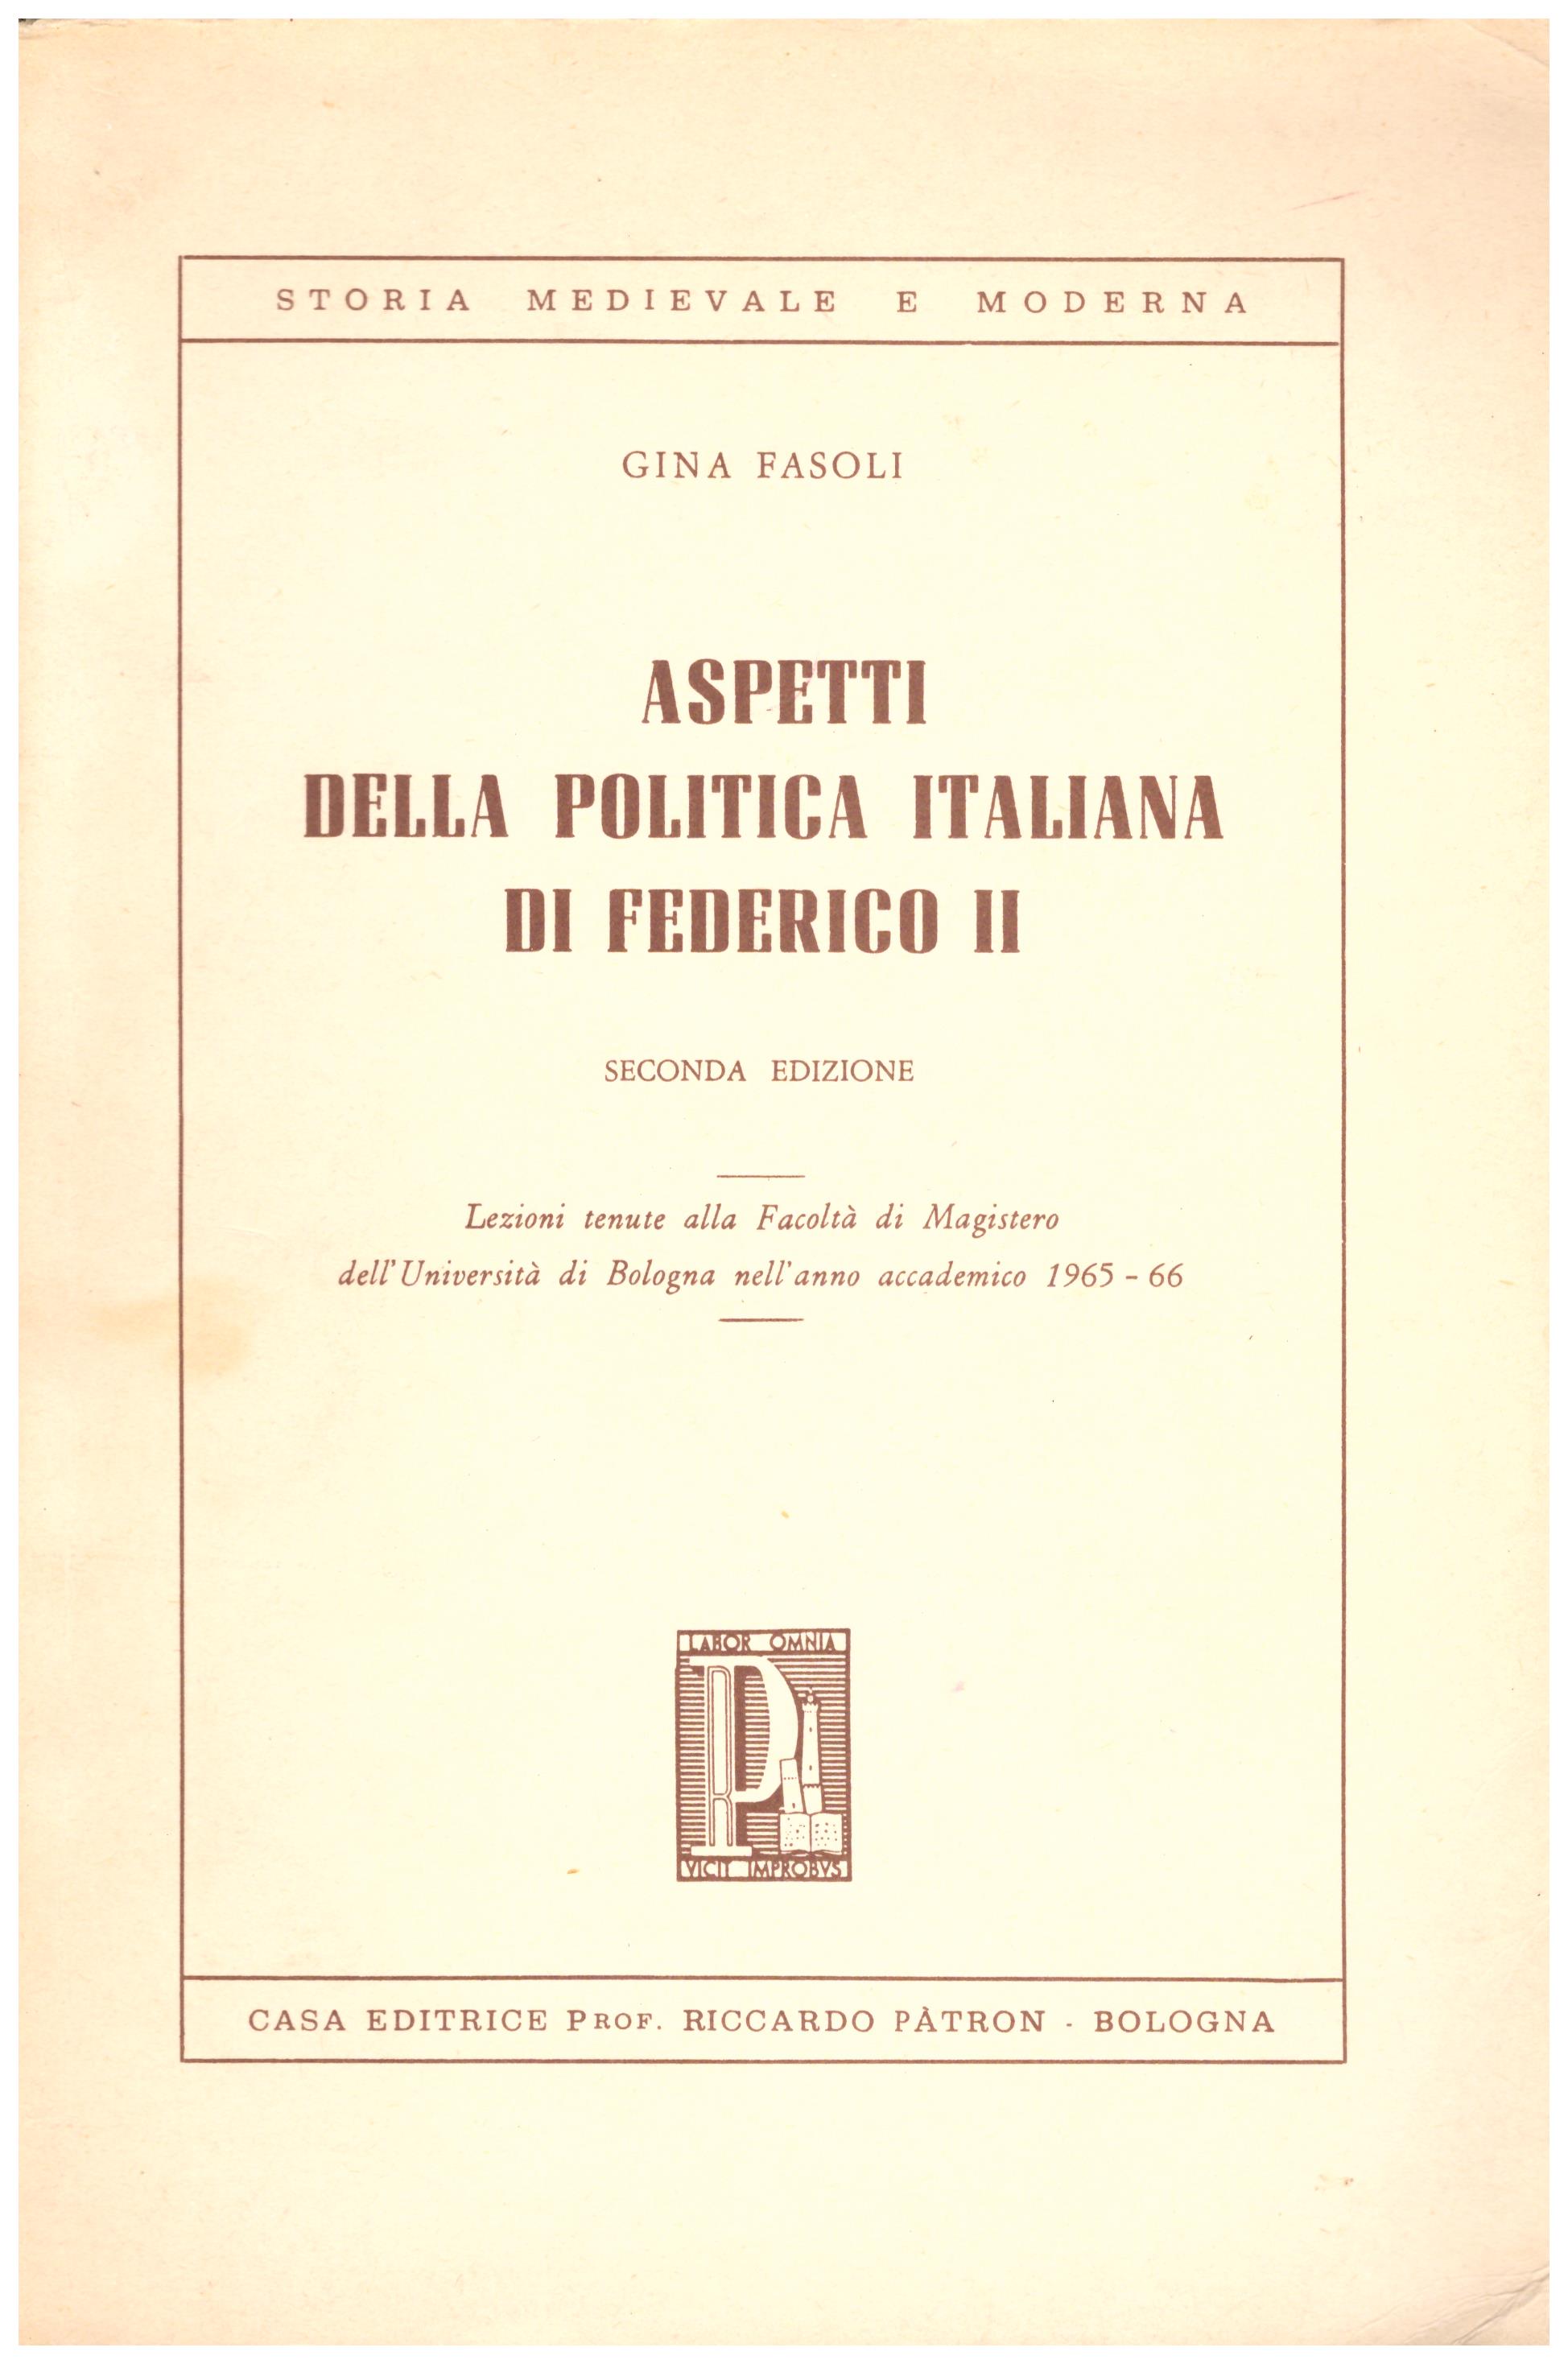 Aspetti della politica italiana di federico II. Lezioni tenute alla facoltà di Magistero dell'università di Bologna nell'a.a. 1965-1966